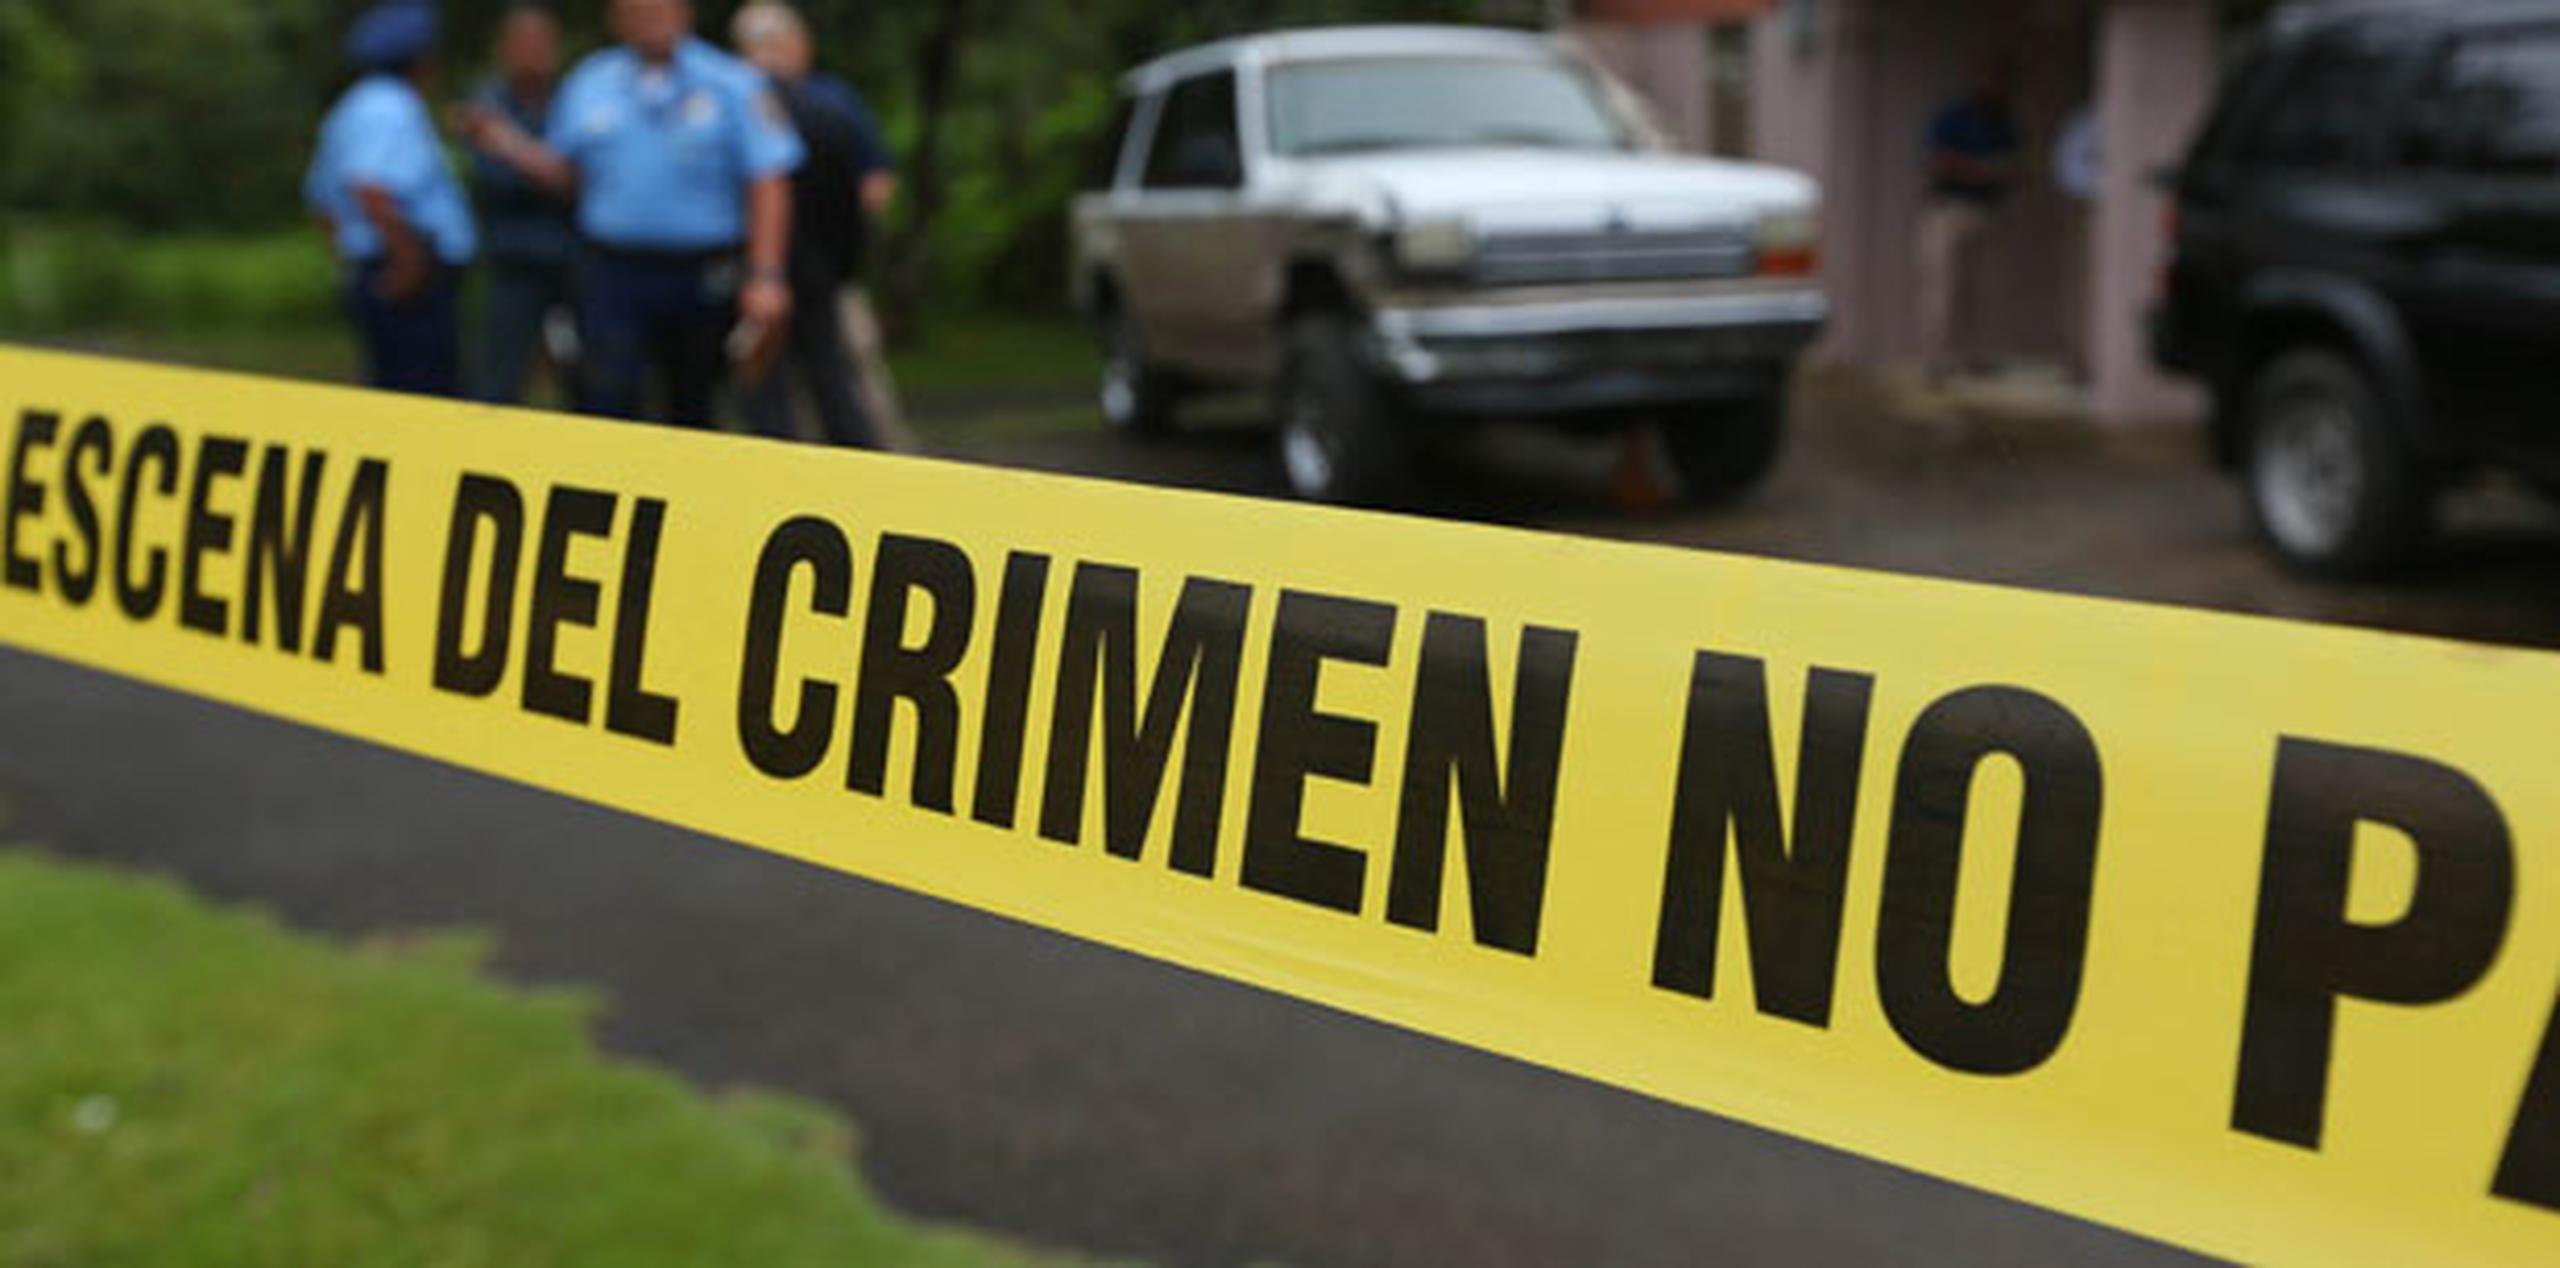 El asesinato más reciente se reportó poco después de las 10:00 a.m. en el residencial Bella Vista, en Bayamón. (Archivo)